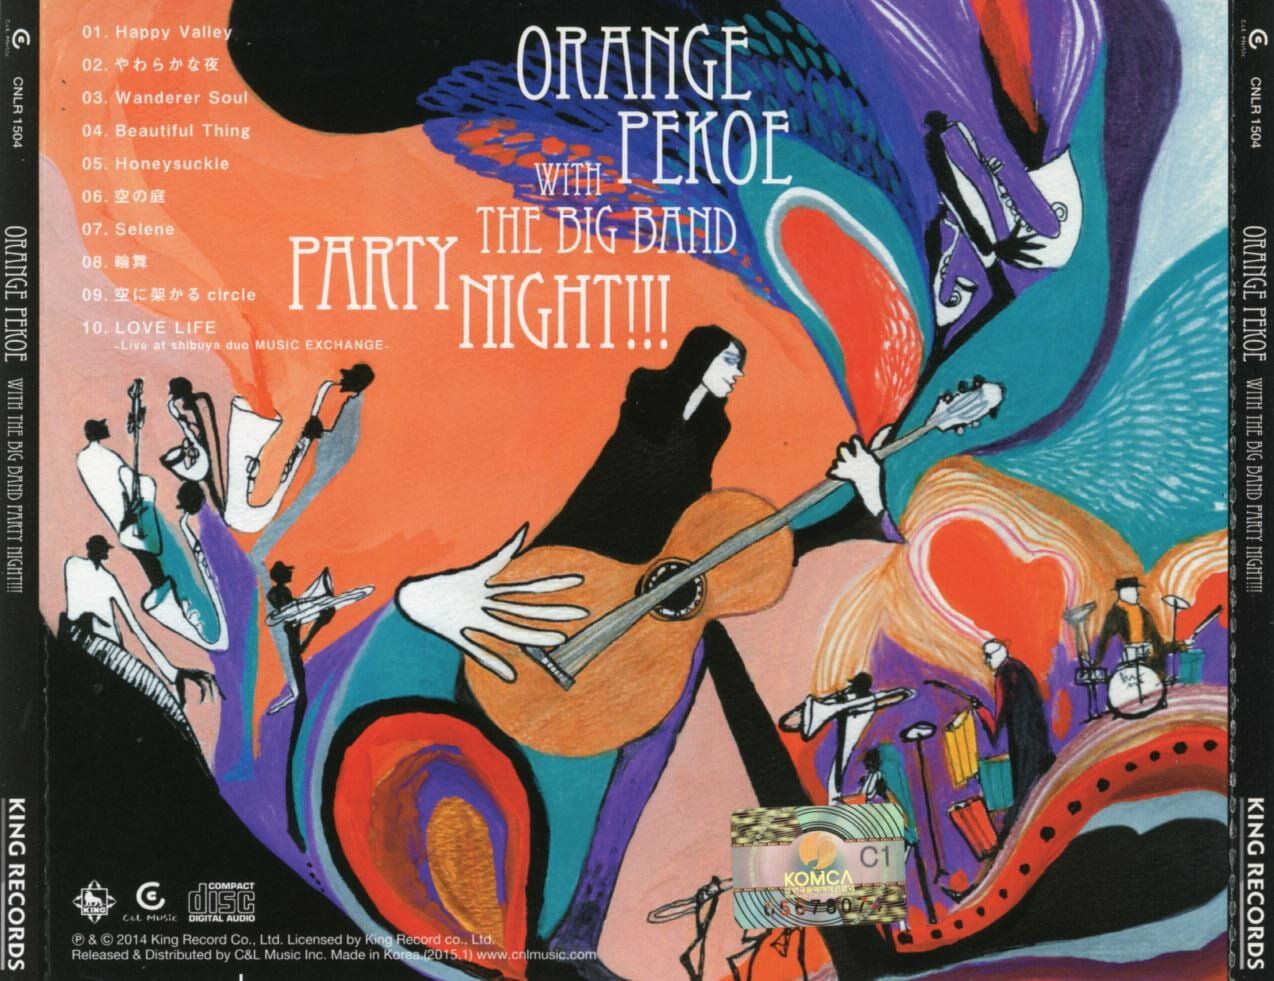 오렌지 페코 - Orange Pekoe - Orange Pekoe With The Big Band Party Night!!!